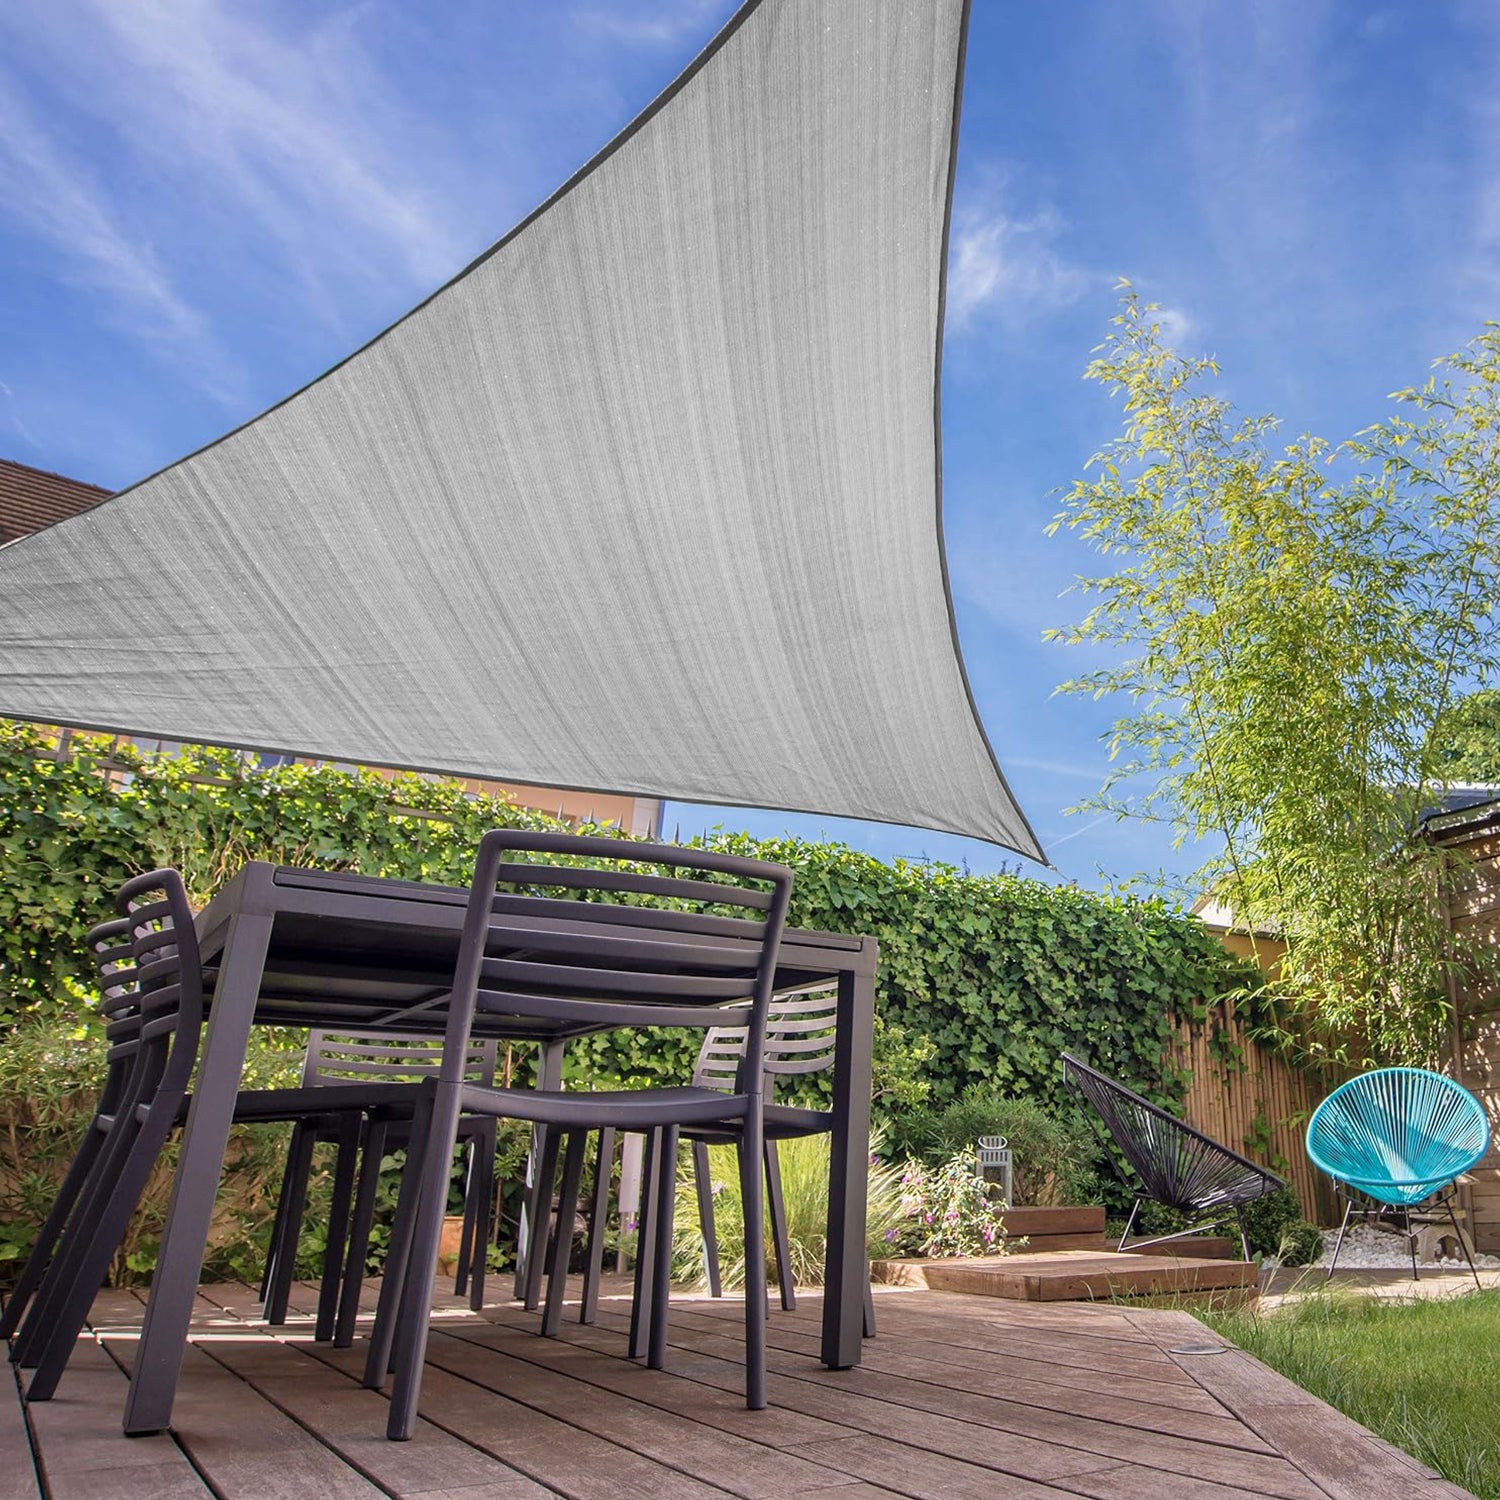 Sonnensegel 100% HDPE - Dreieck 3 x 3 Meter - Terracotta